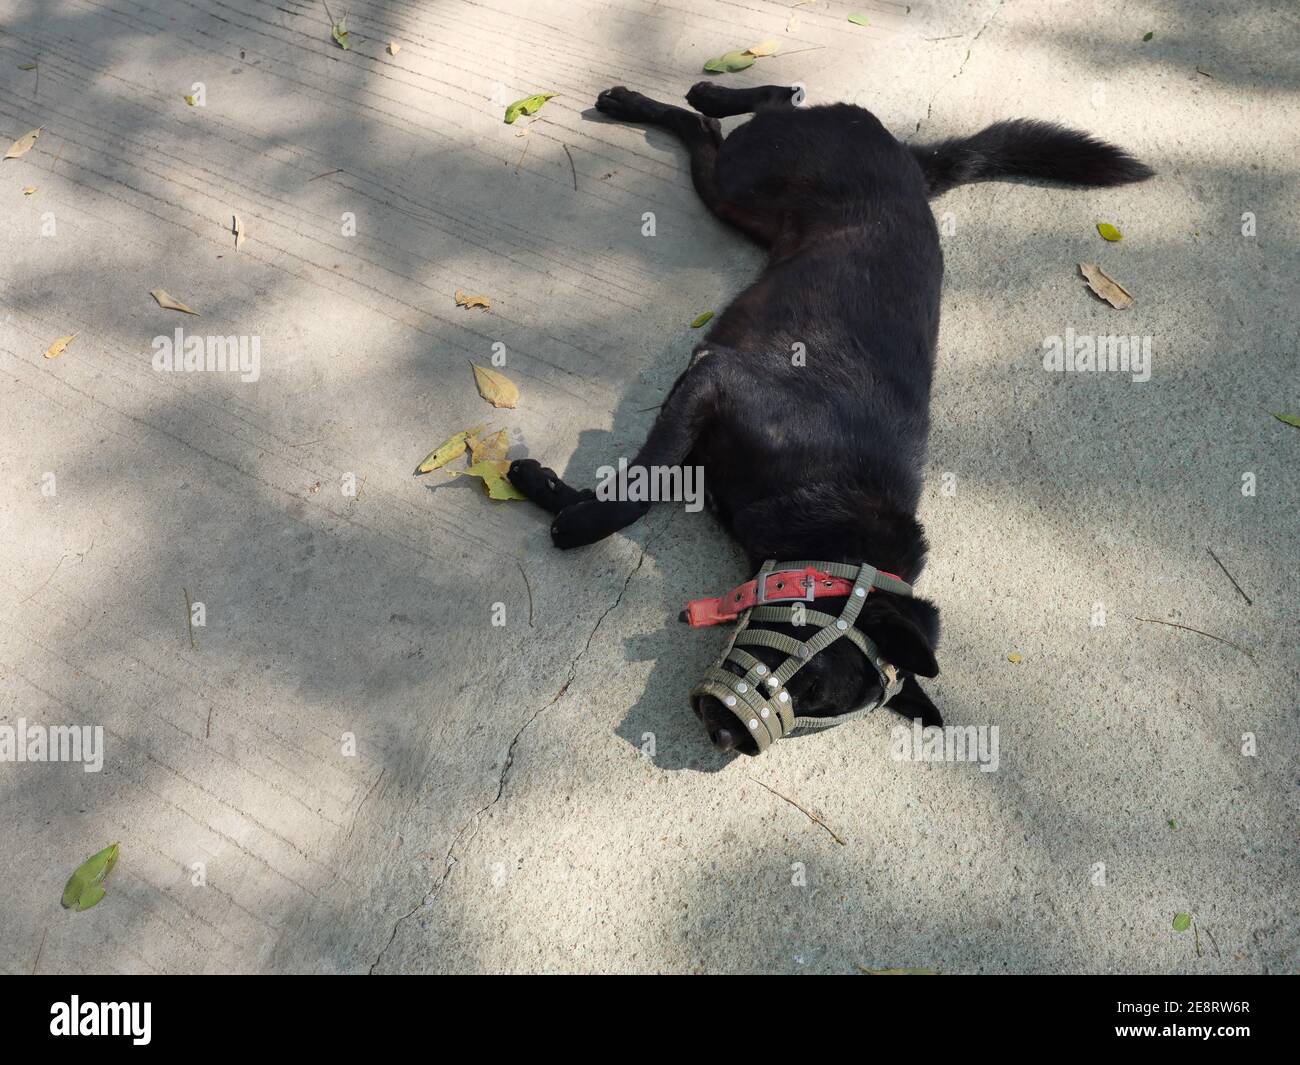 La boca del perro negro de pelo corto estaba cubierta de hocico, mascota durmiendo en tierra gris Foto de stock